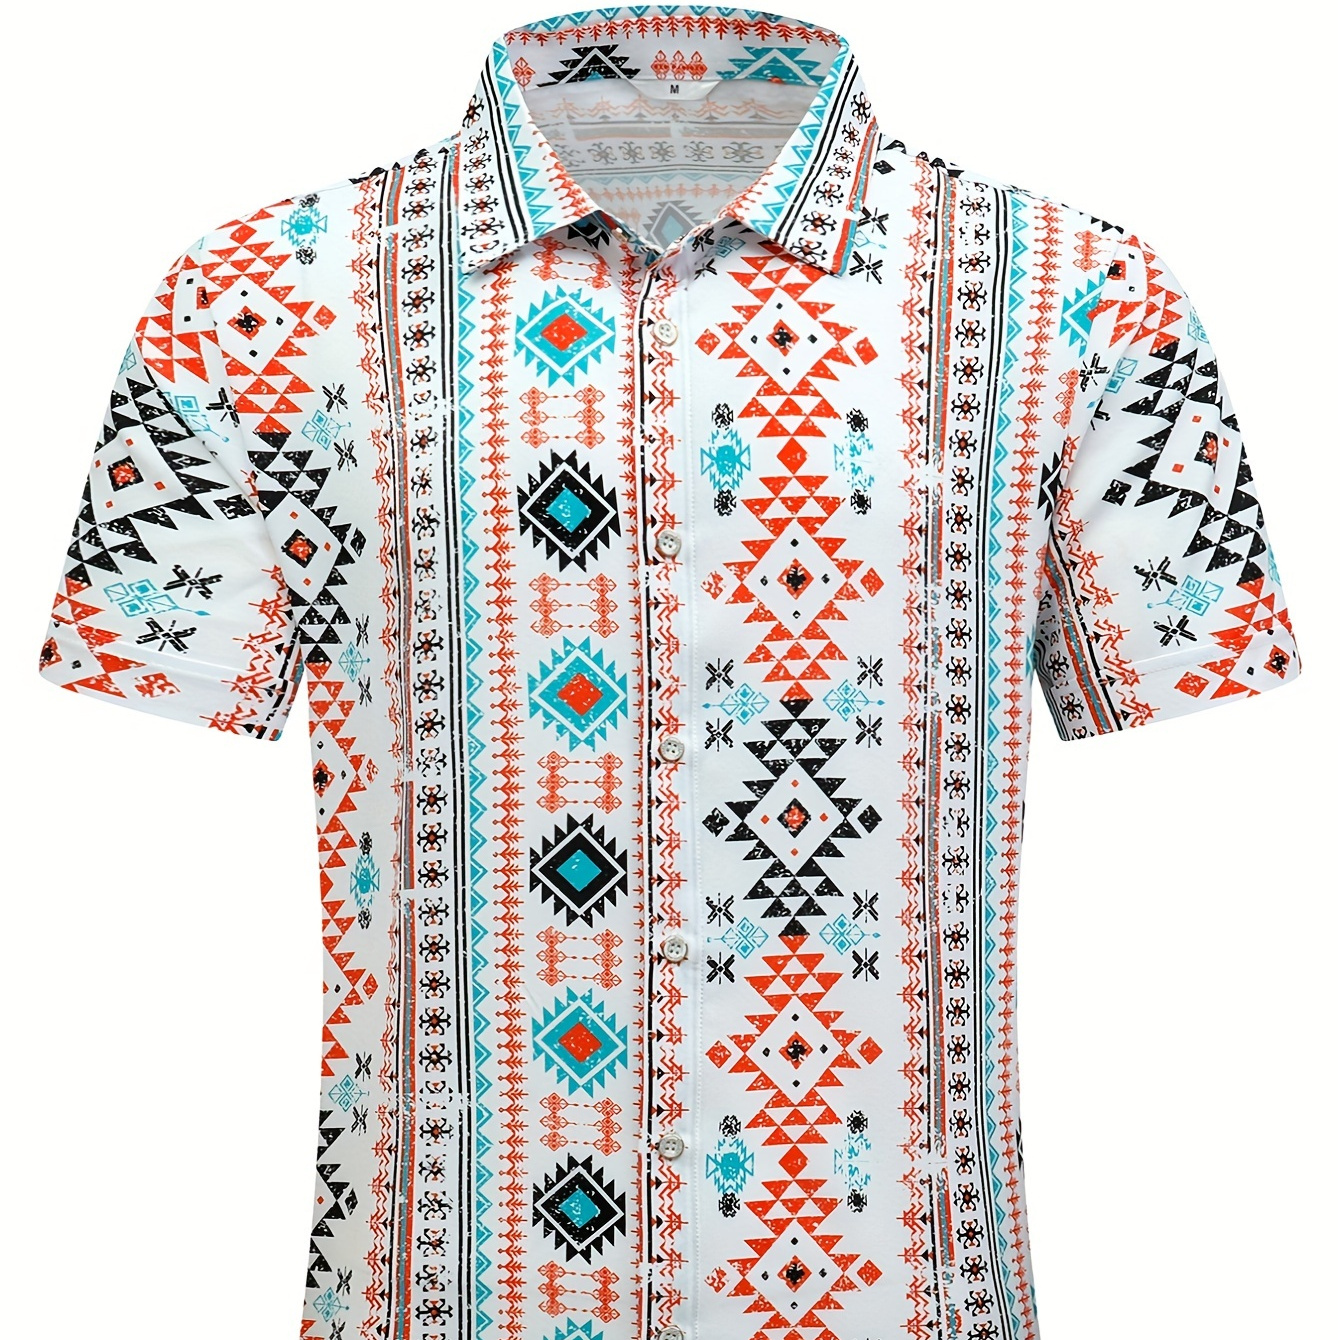 

Men's Hawaiian Shirt, Geometric Print Casual Summer Beach Short Sleeve Button Up Lapel Vacation Shirt